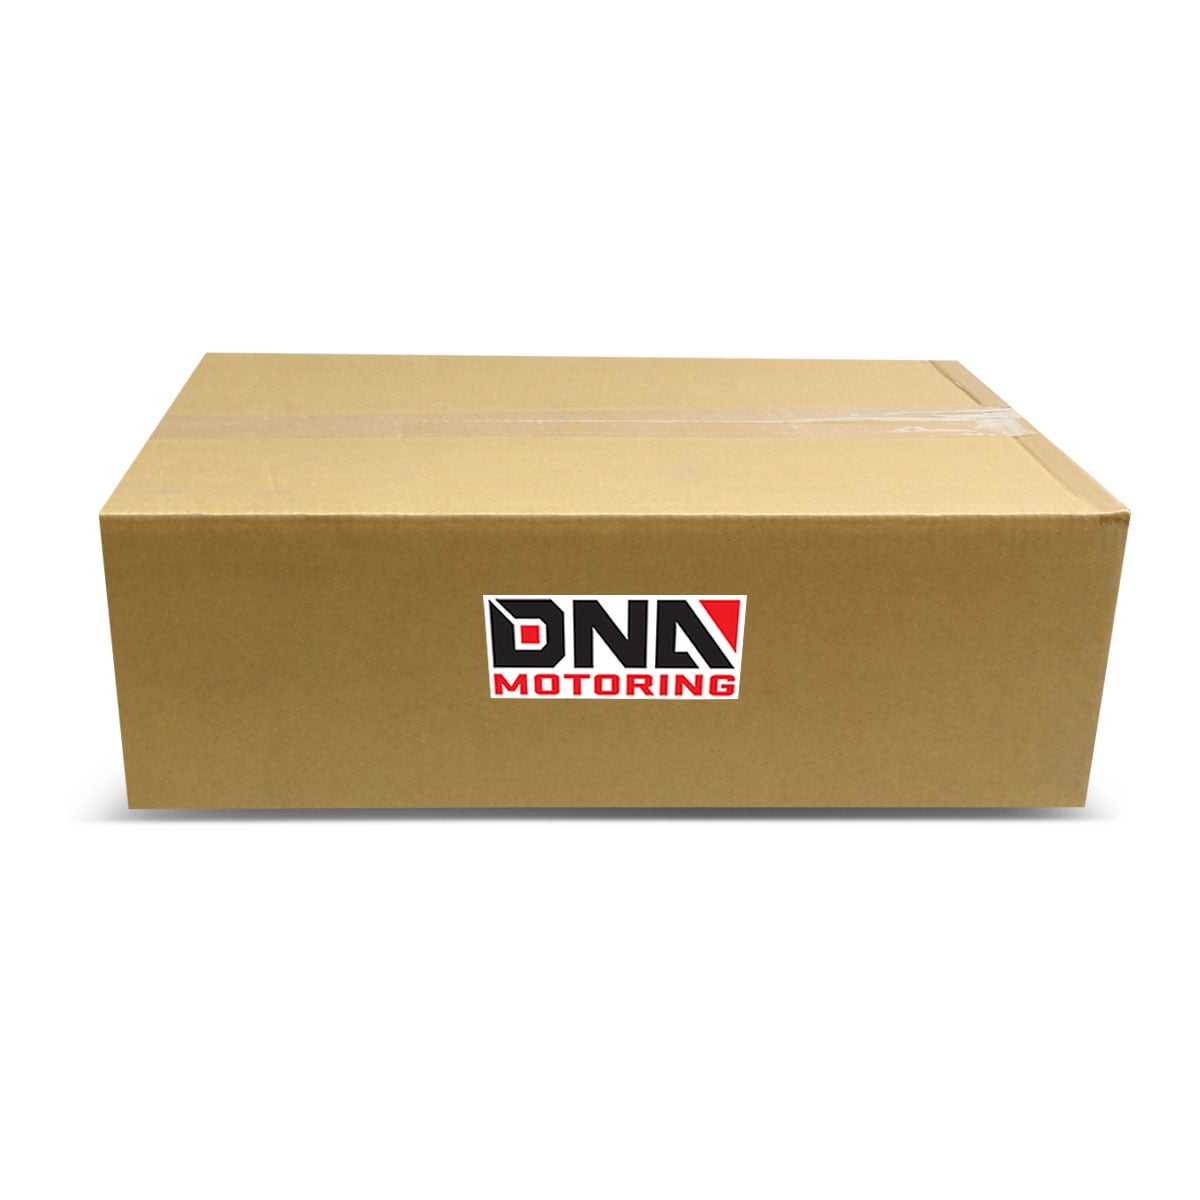 DNA MOTORING DP-370Z-G37 Turbo Exhaust Downpipe Kit for 08-16 Nissan 370Z Fairlady Z Z34//G37